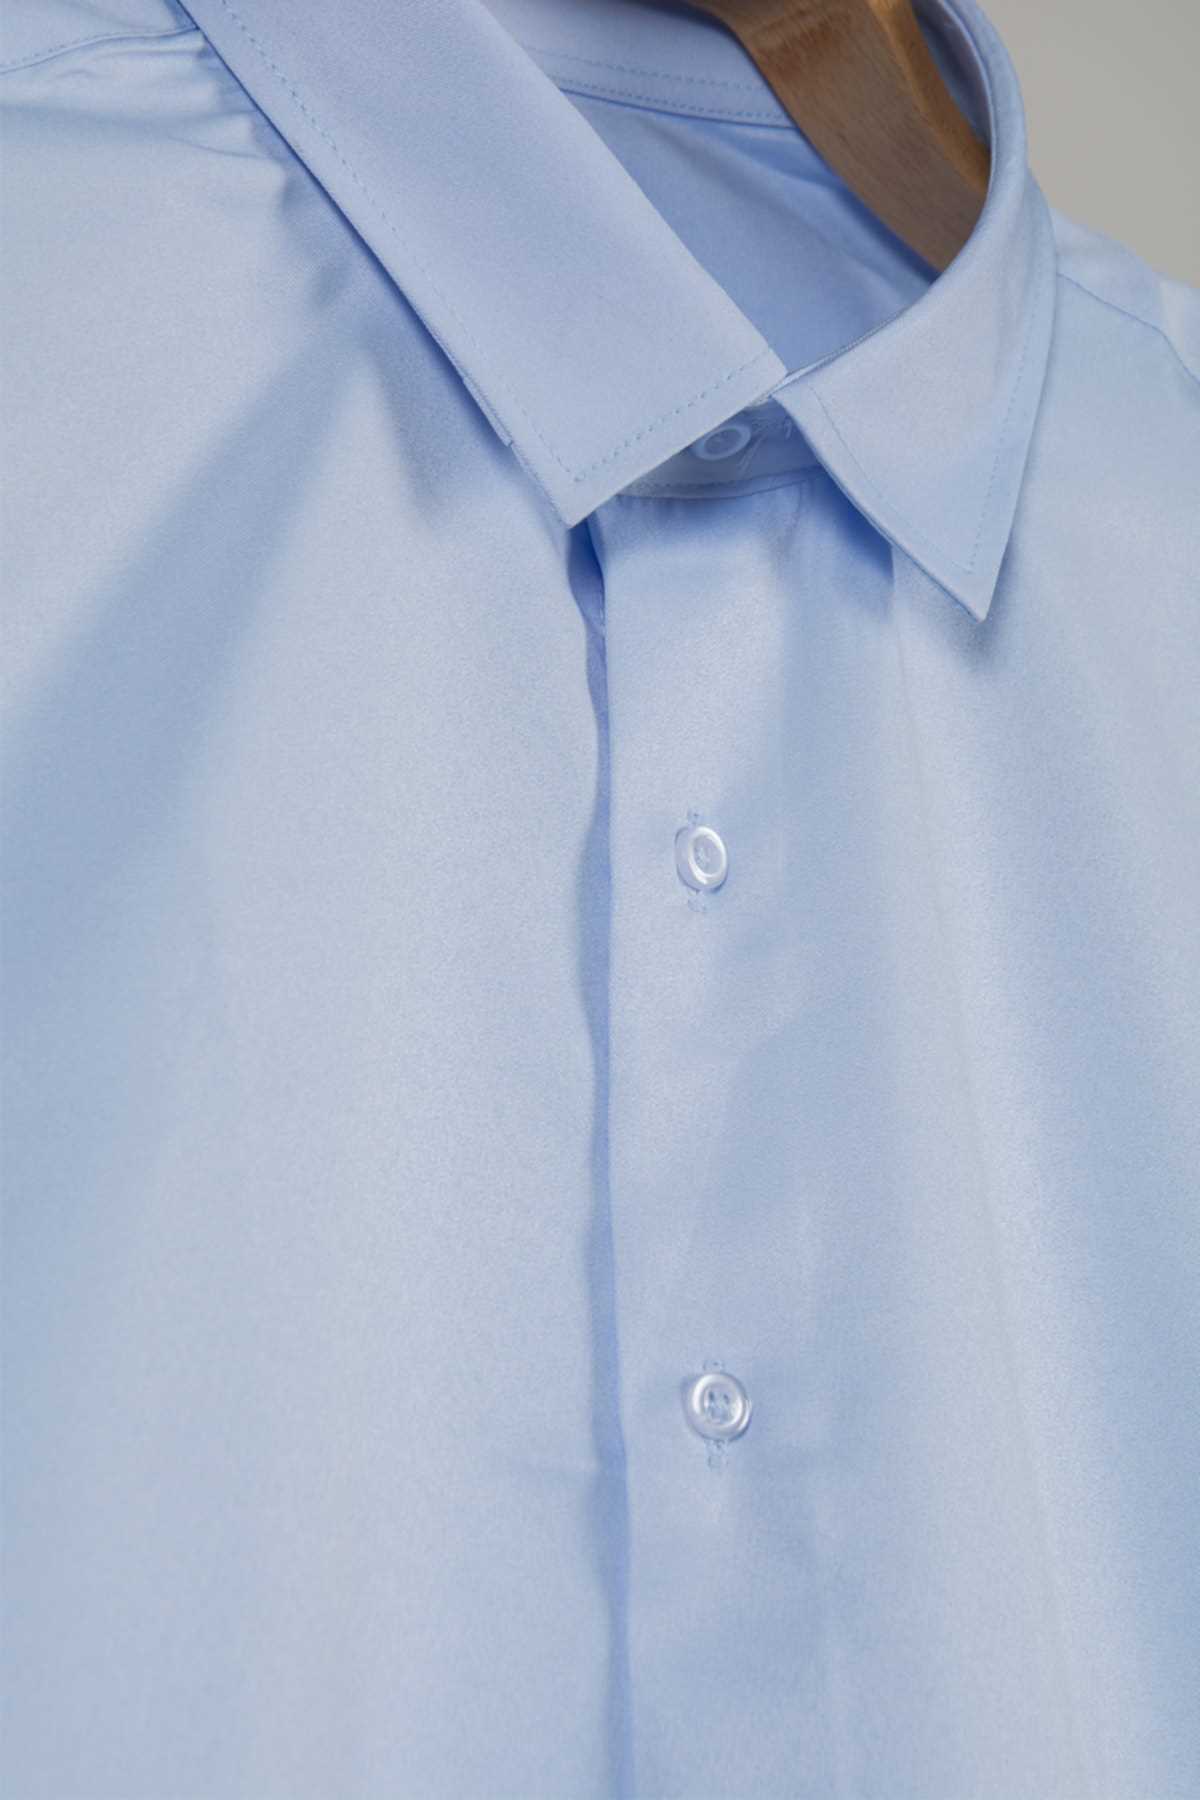 فروش انلاین پیراهن ساتن مردانه برند COLLIE آبی ty260644619